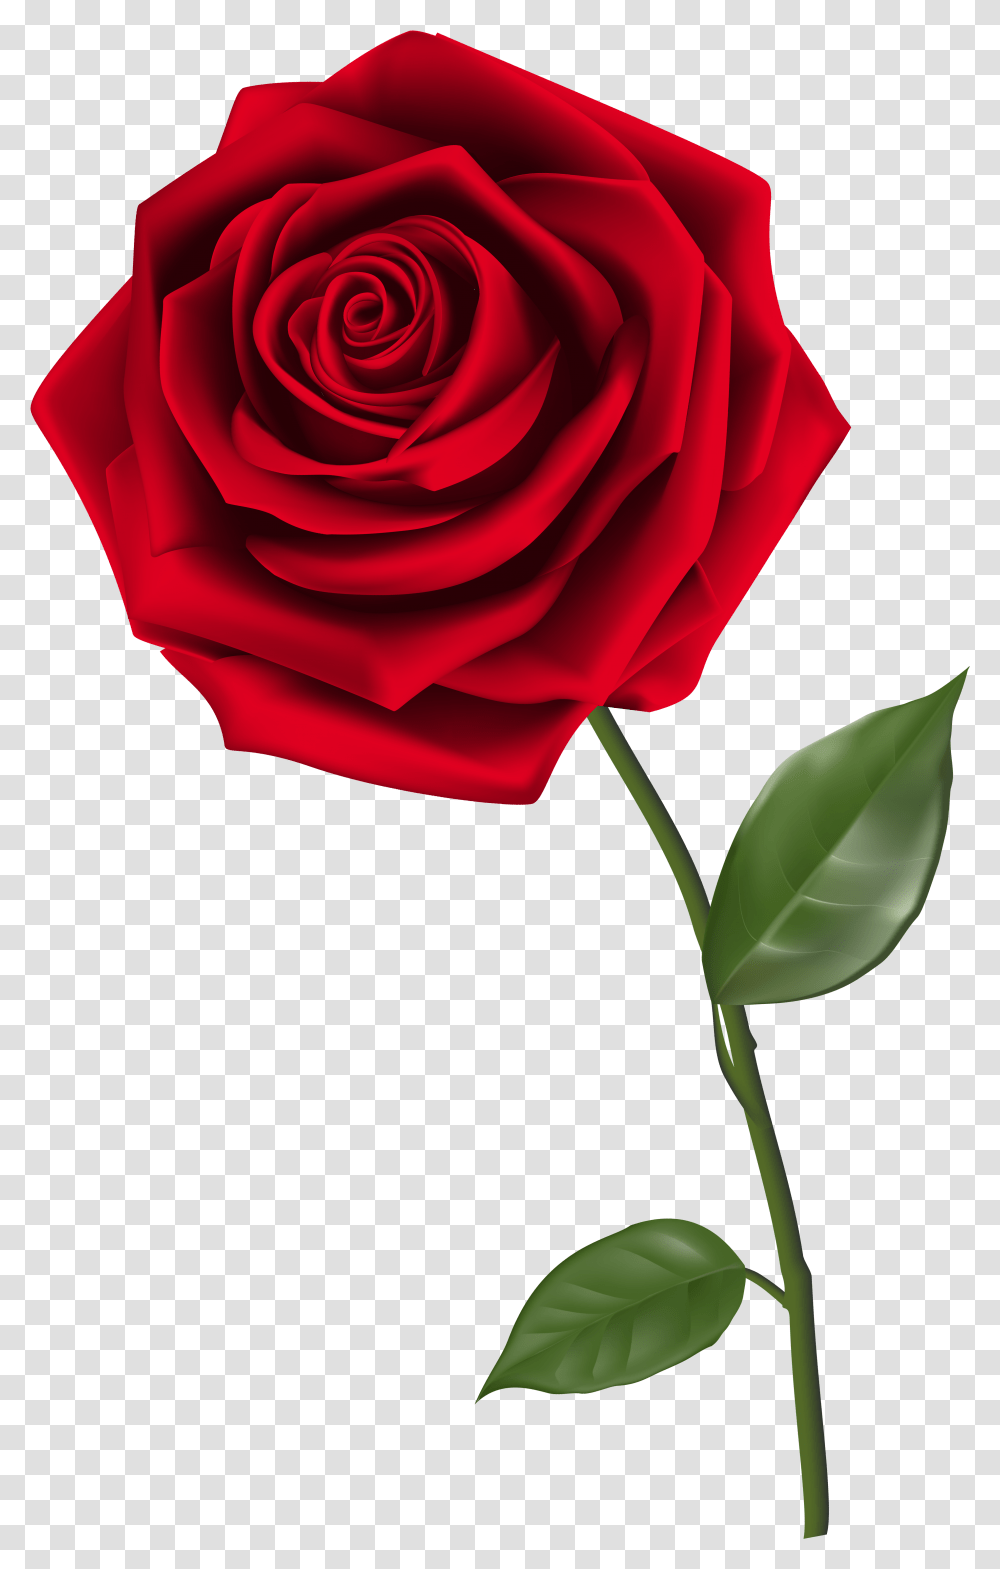 Background Red Rose, Plant, Flower, Blossom, Petal Transparent Png